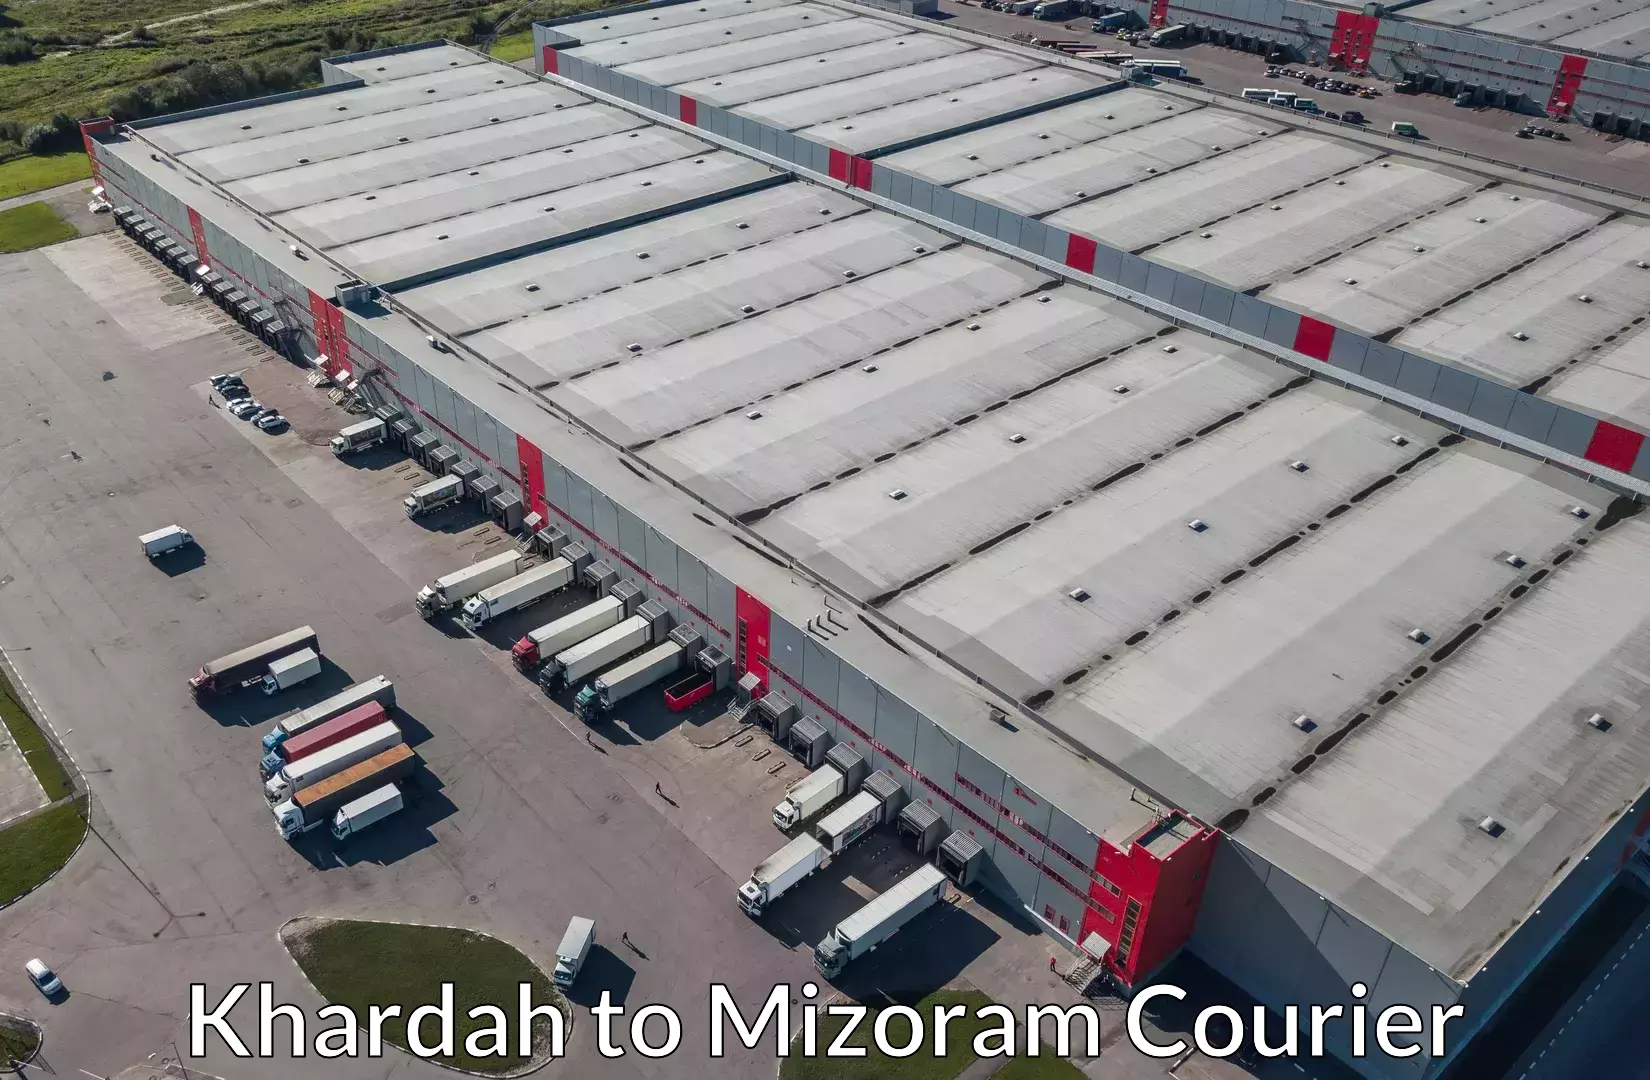 Luggage delivery optimization Khardah to Mizoram